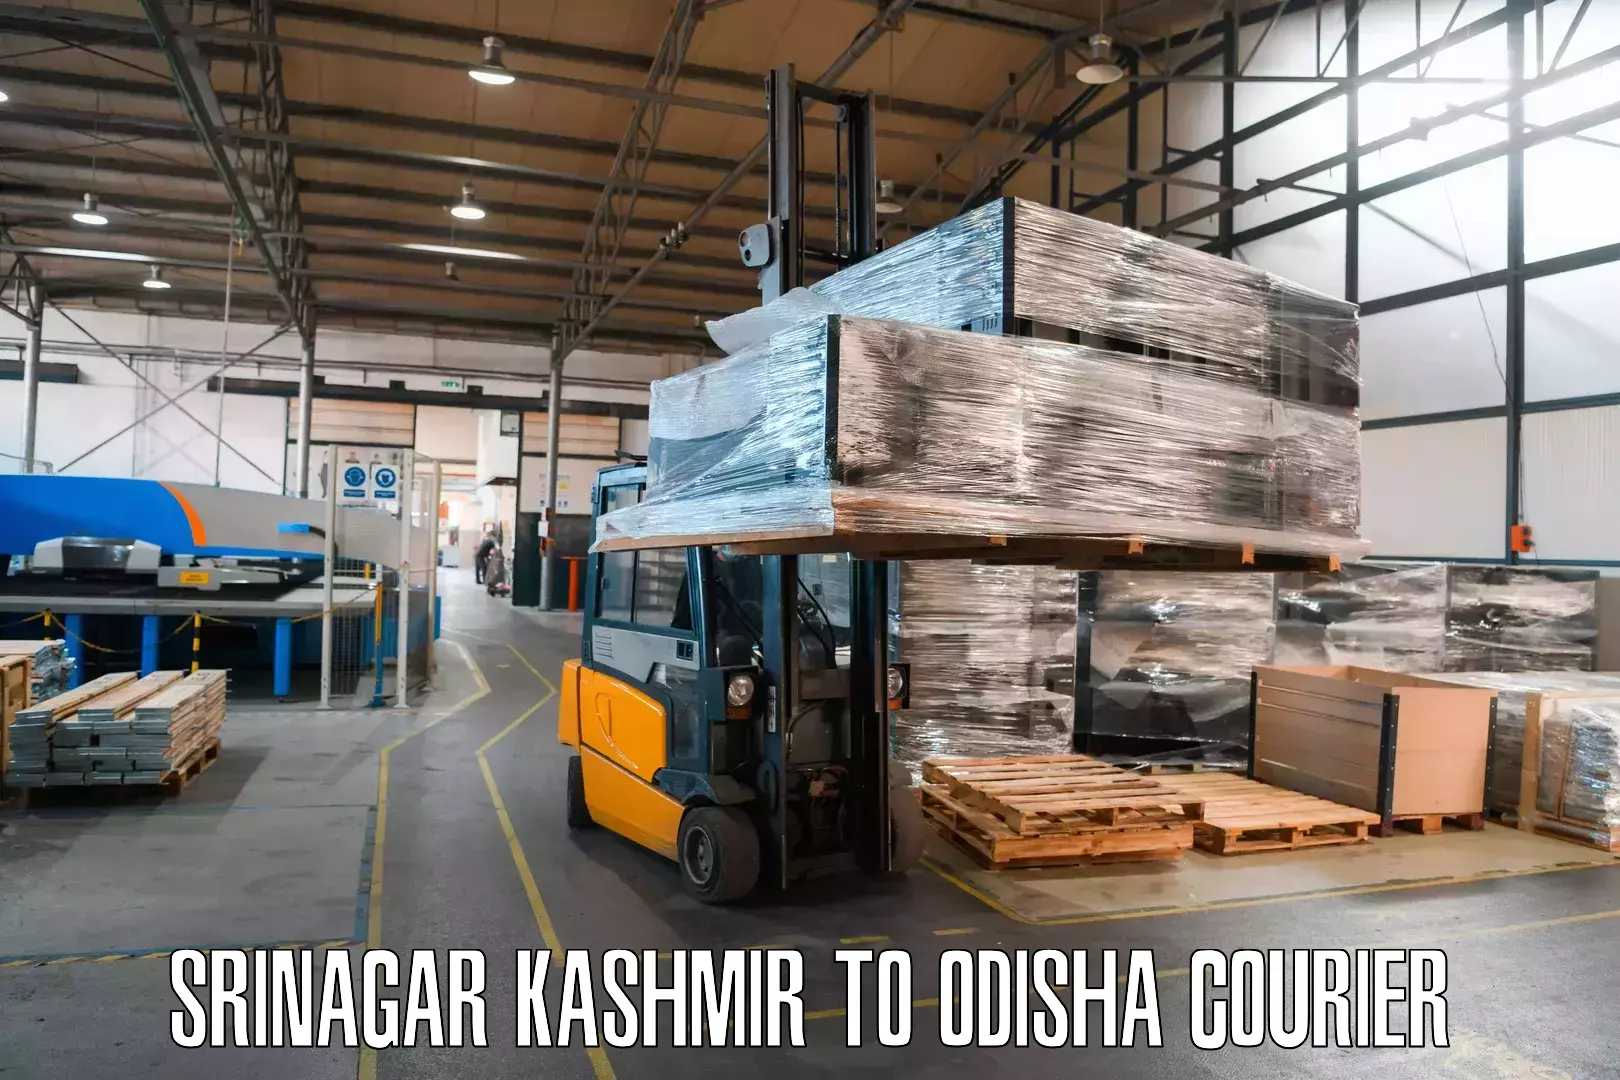 24/7 courier service Srinagar Kashmir to Titilagarh